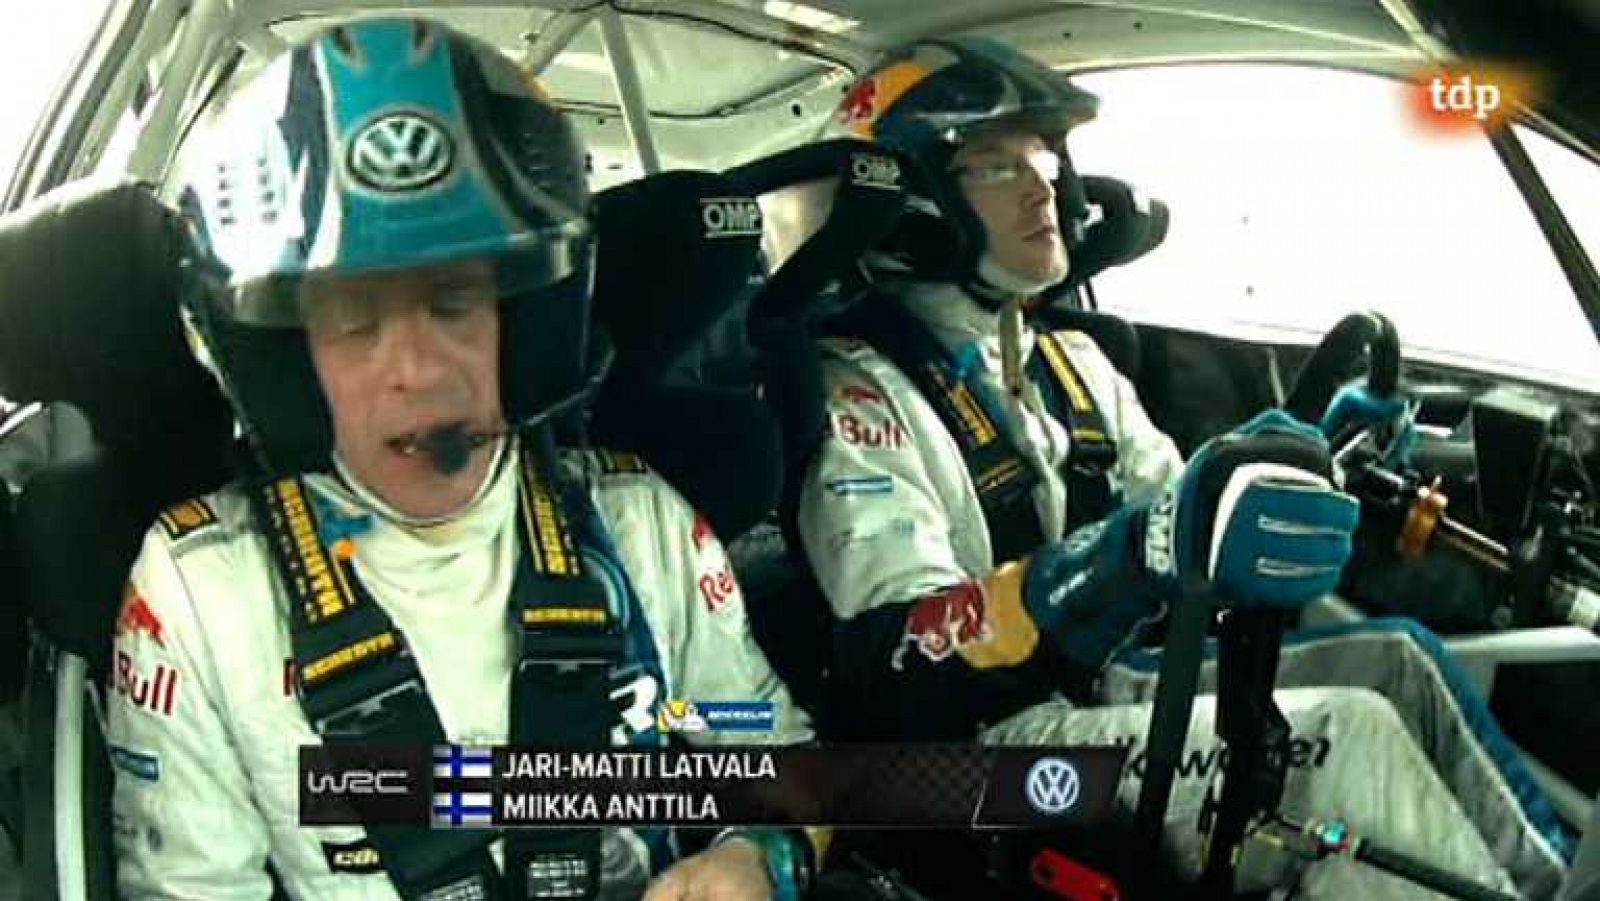 Automovilismo - WRC Campeonato del mundo: Rally Polonia - Resumen 2ª jornada